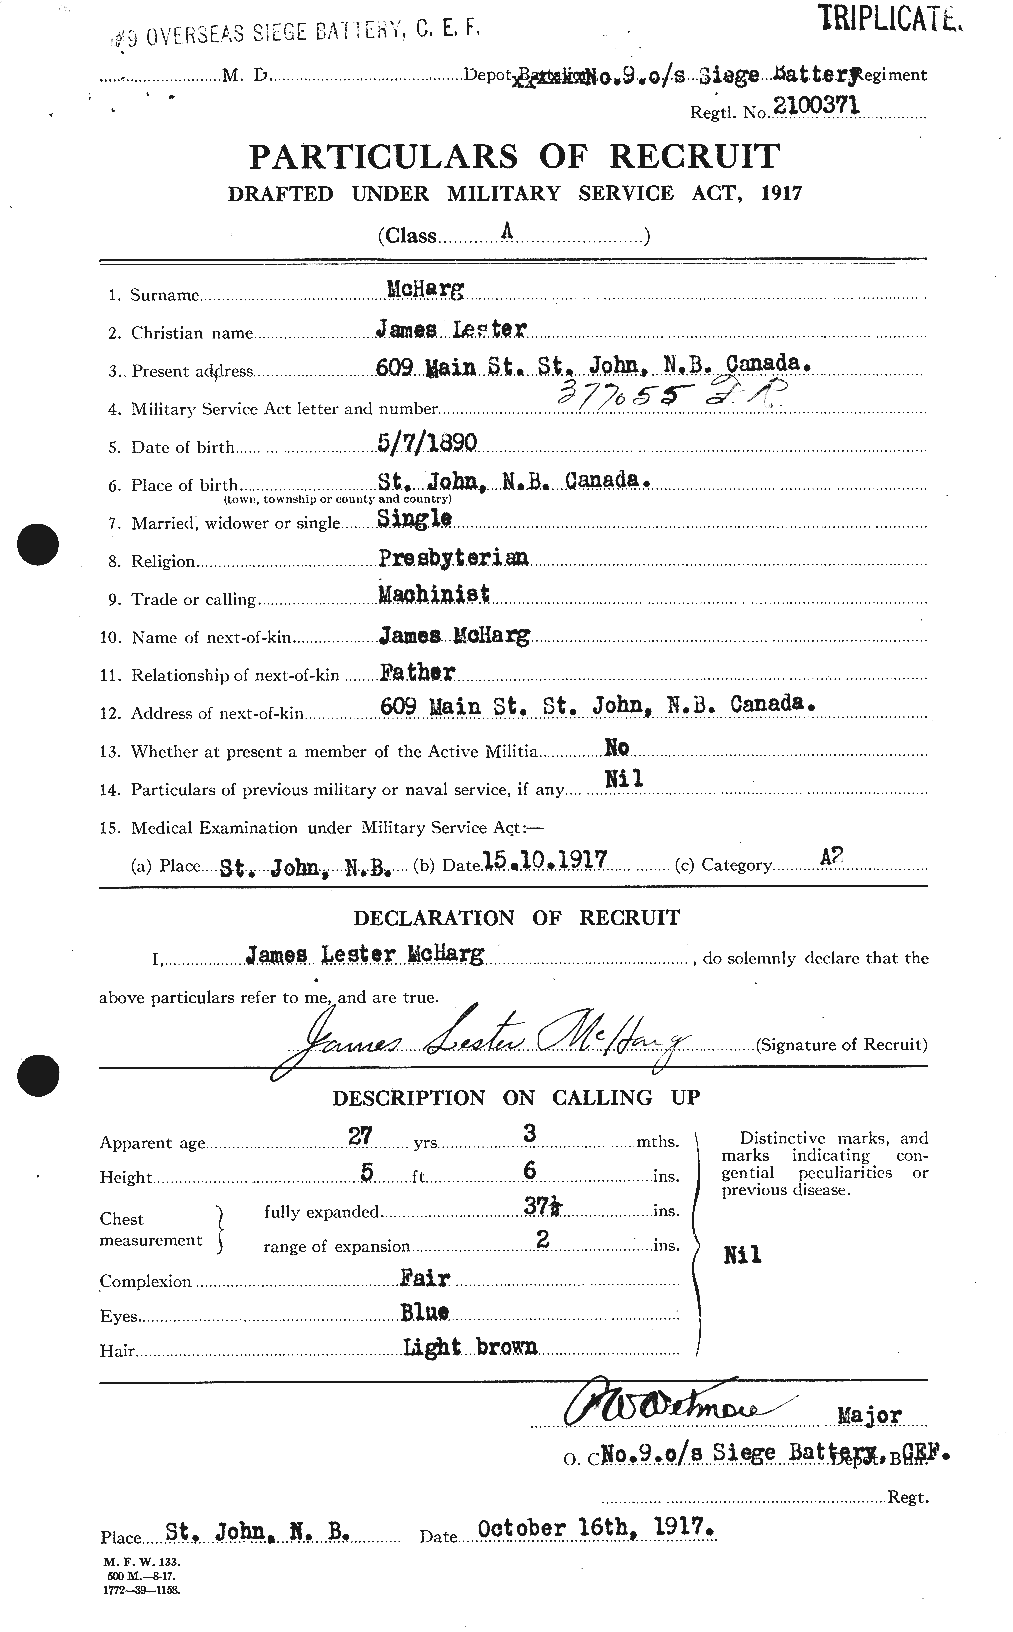 Dossiers du Personnel de la Première Guerre mondiale - CEC 524258a